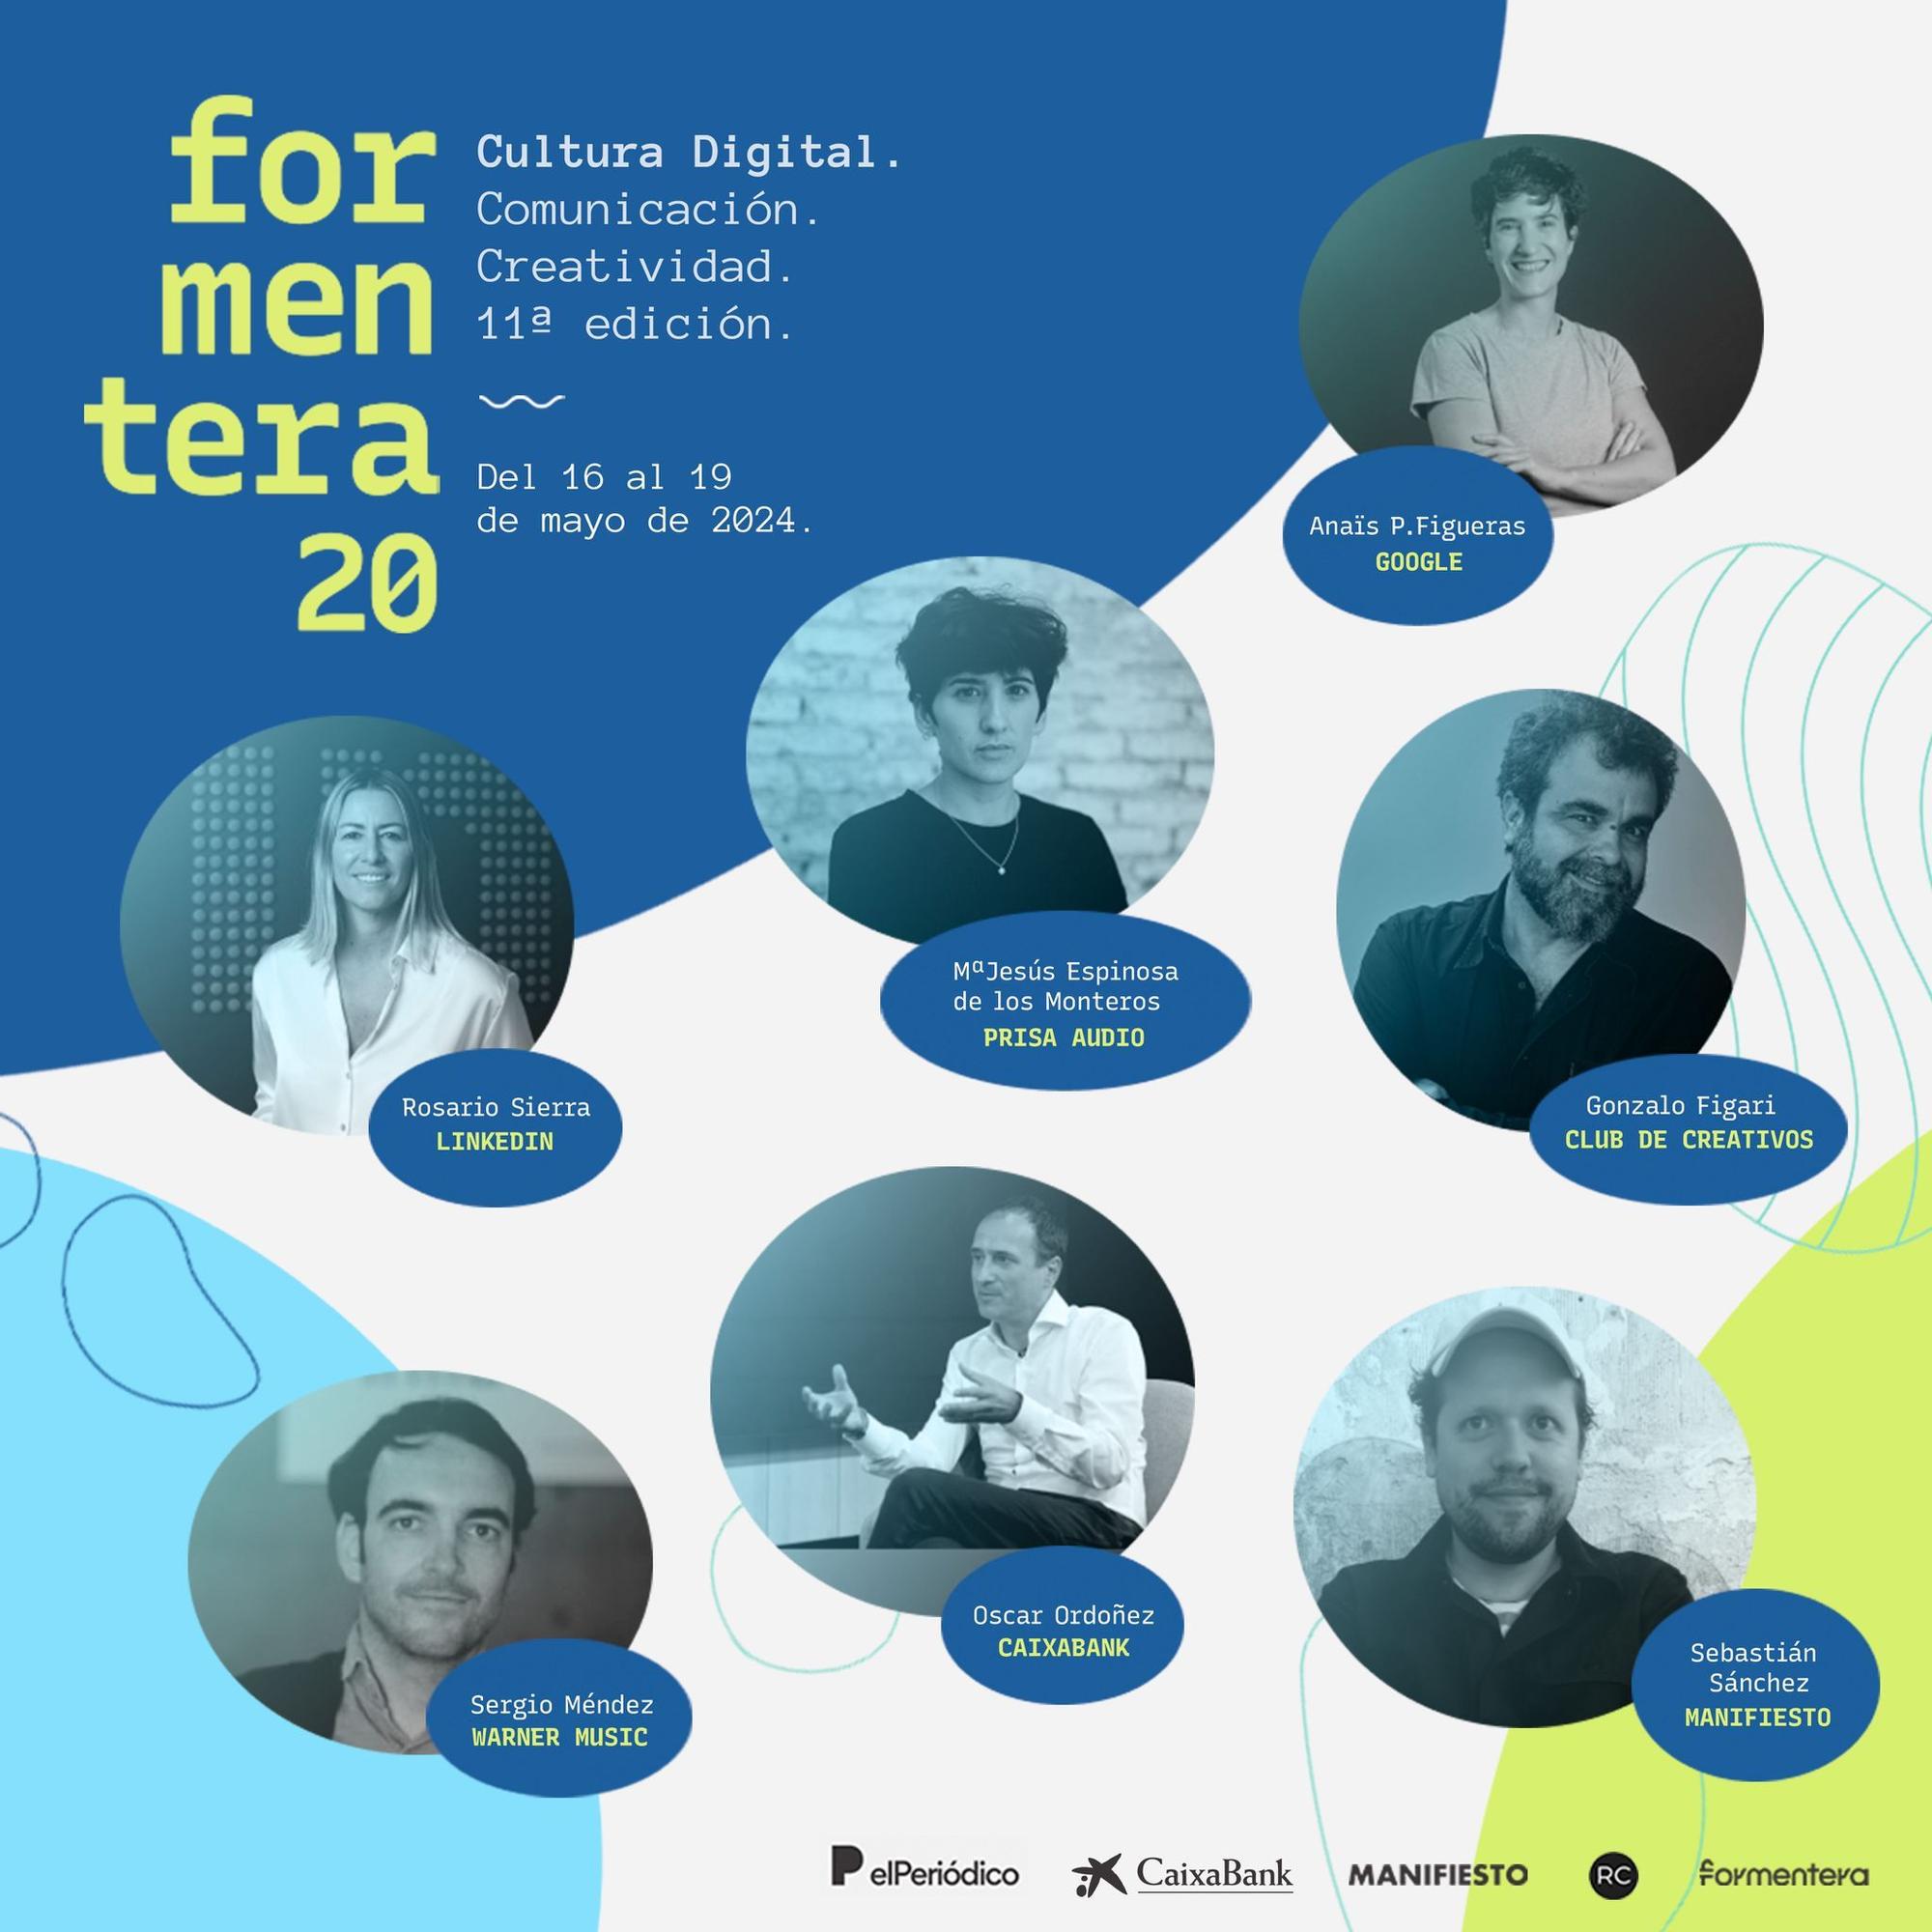 Ponentes del foro Formentera20 de cultura digital.